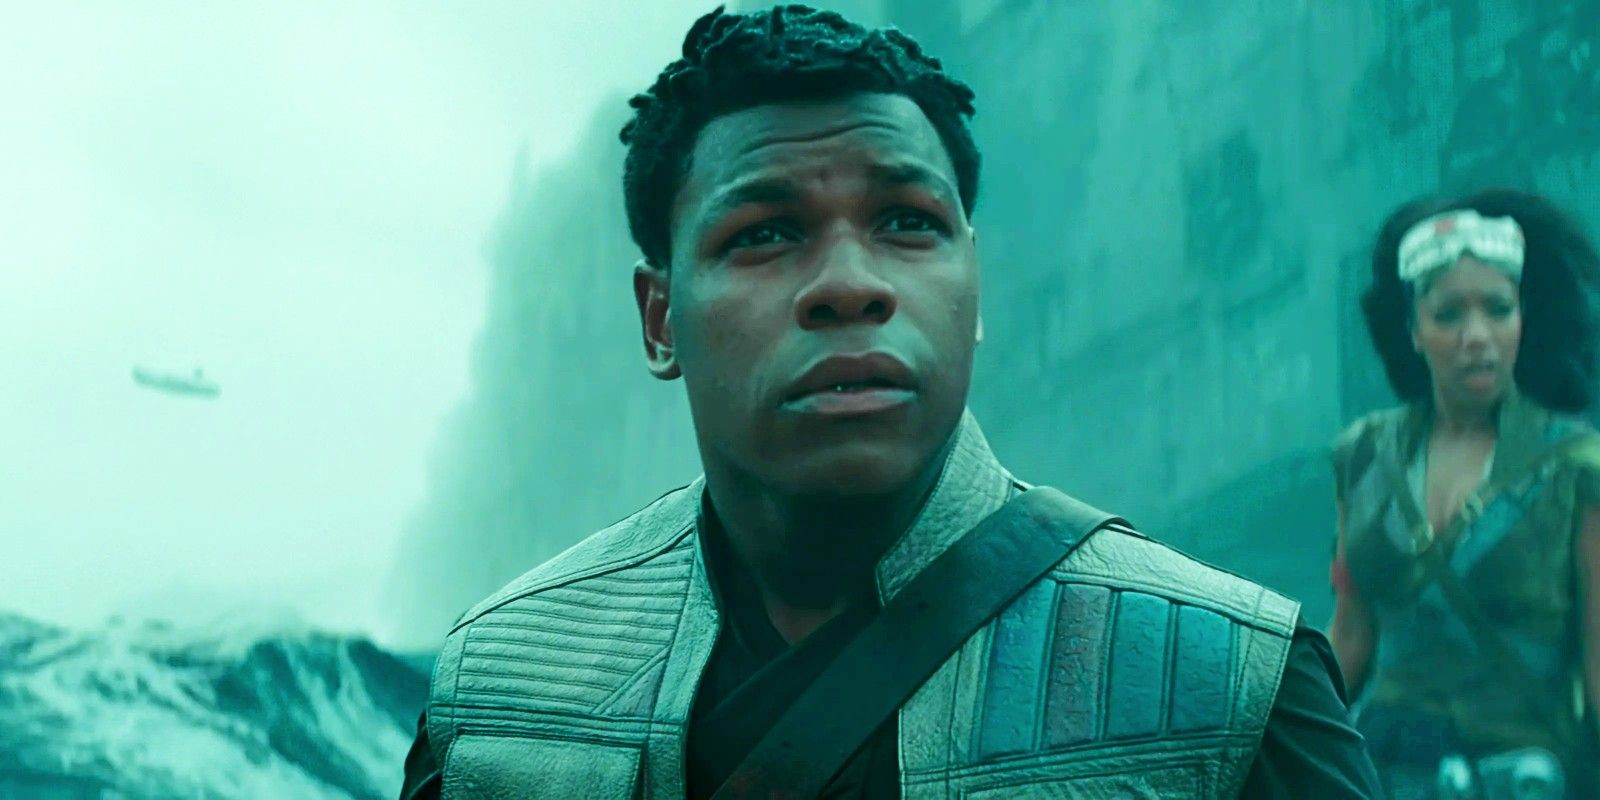 John Boyega as Finn in Star Wars Rise of Skywalker